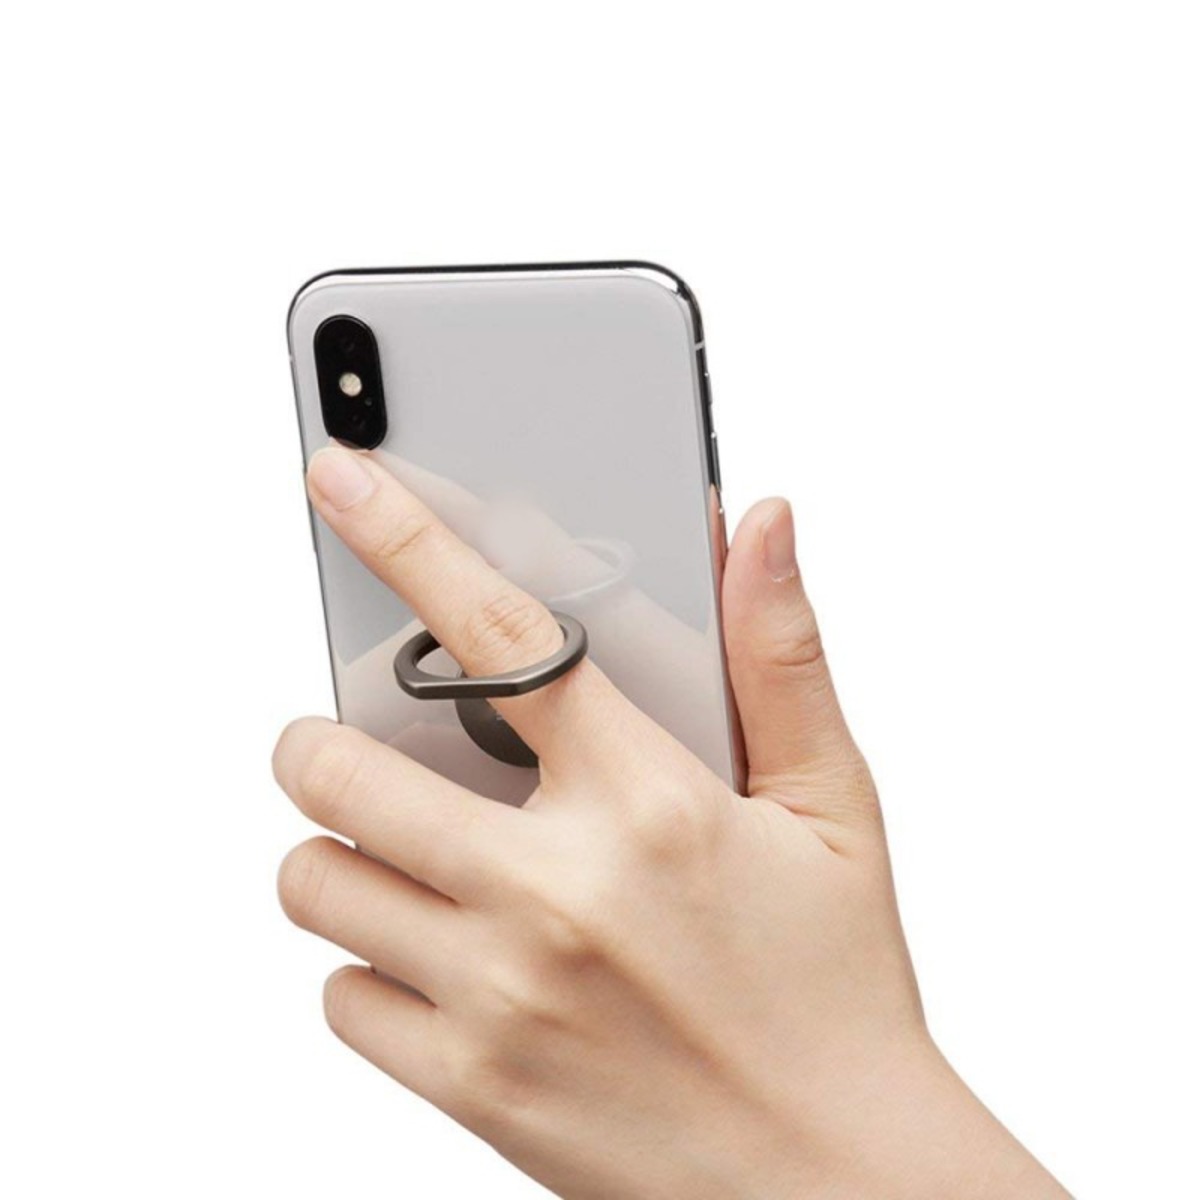 Iends Smartphone Finger Ring Phone Holder SM932